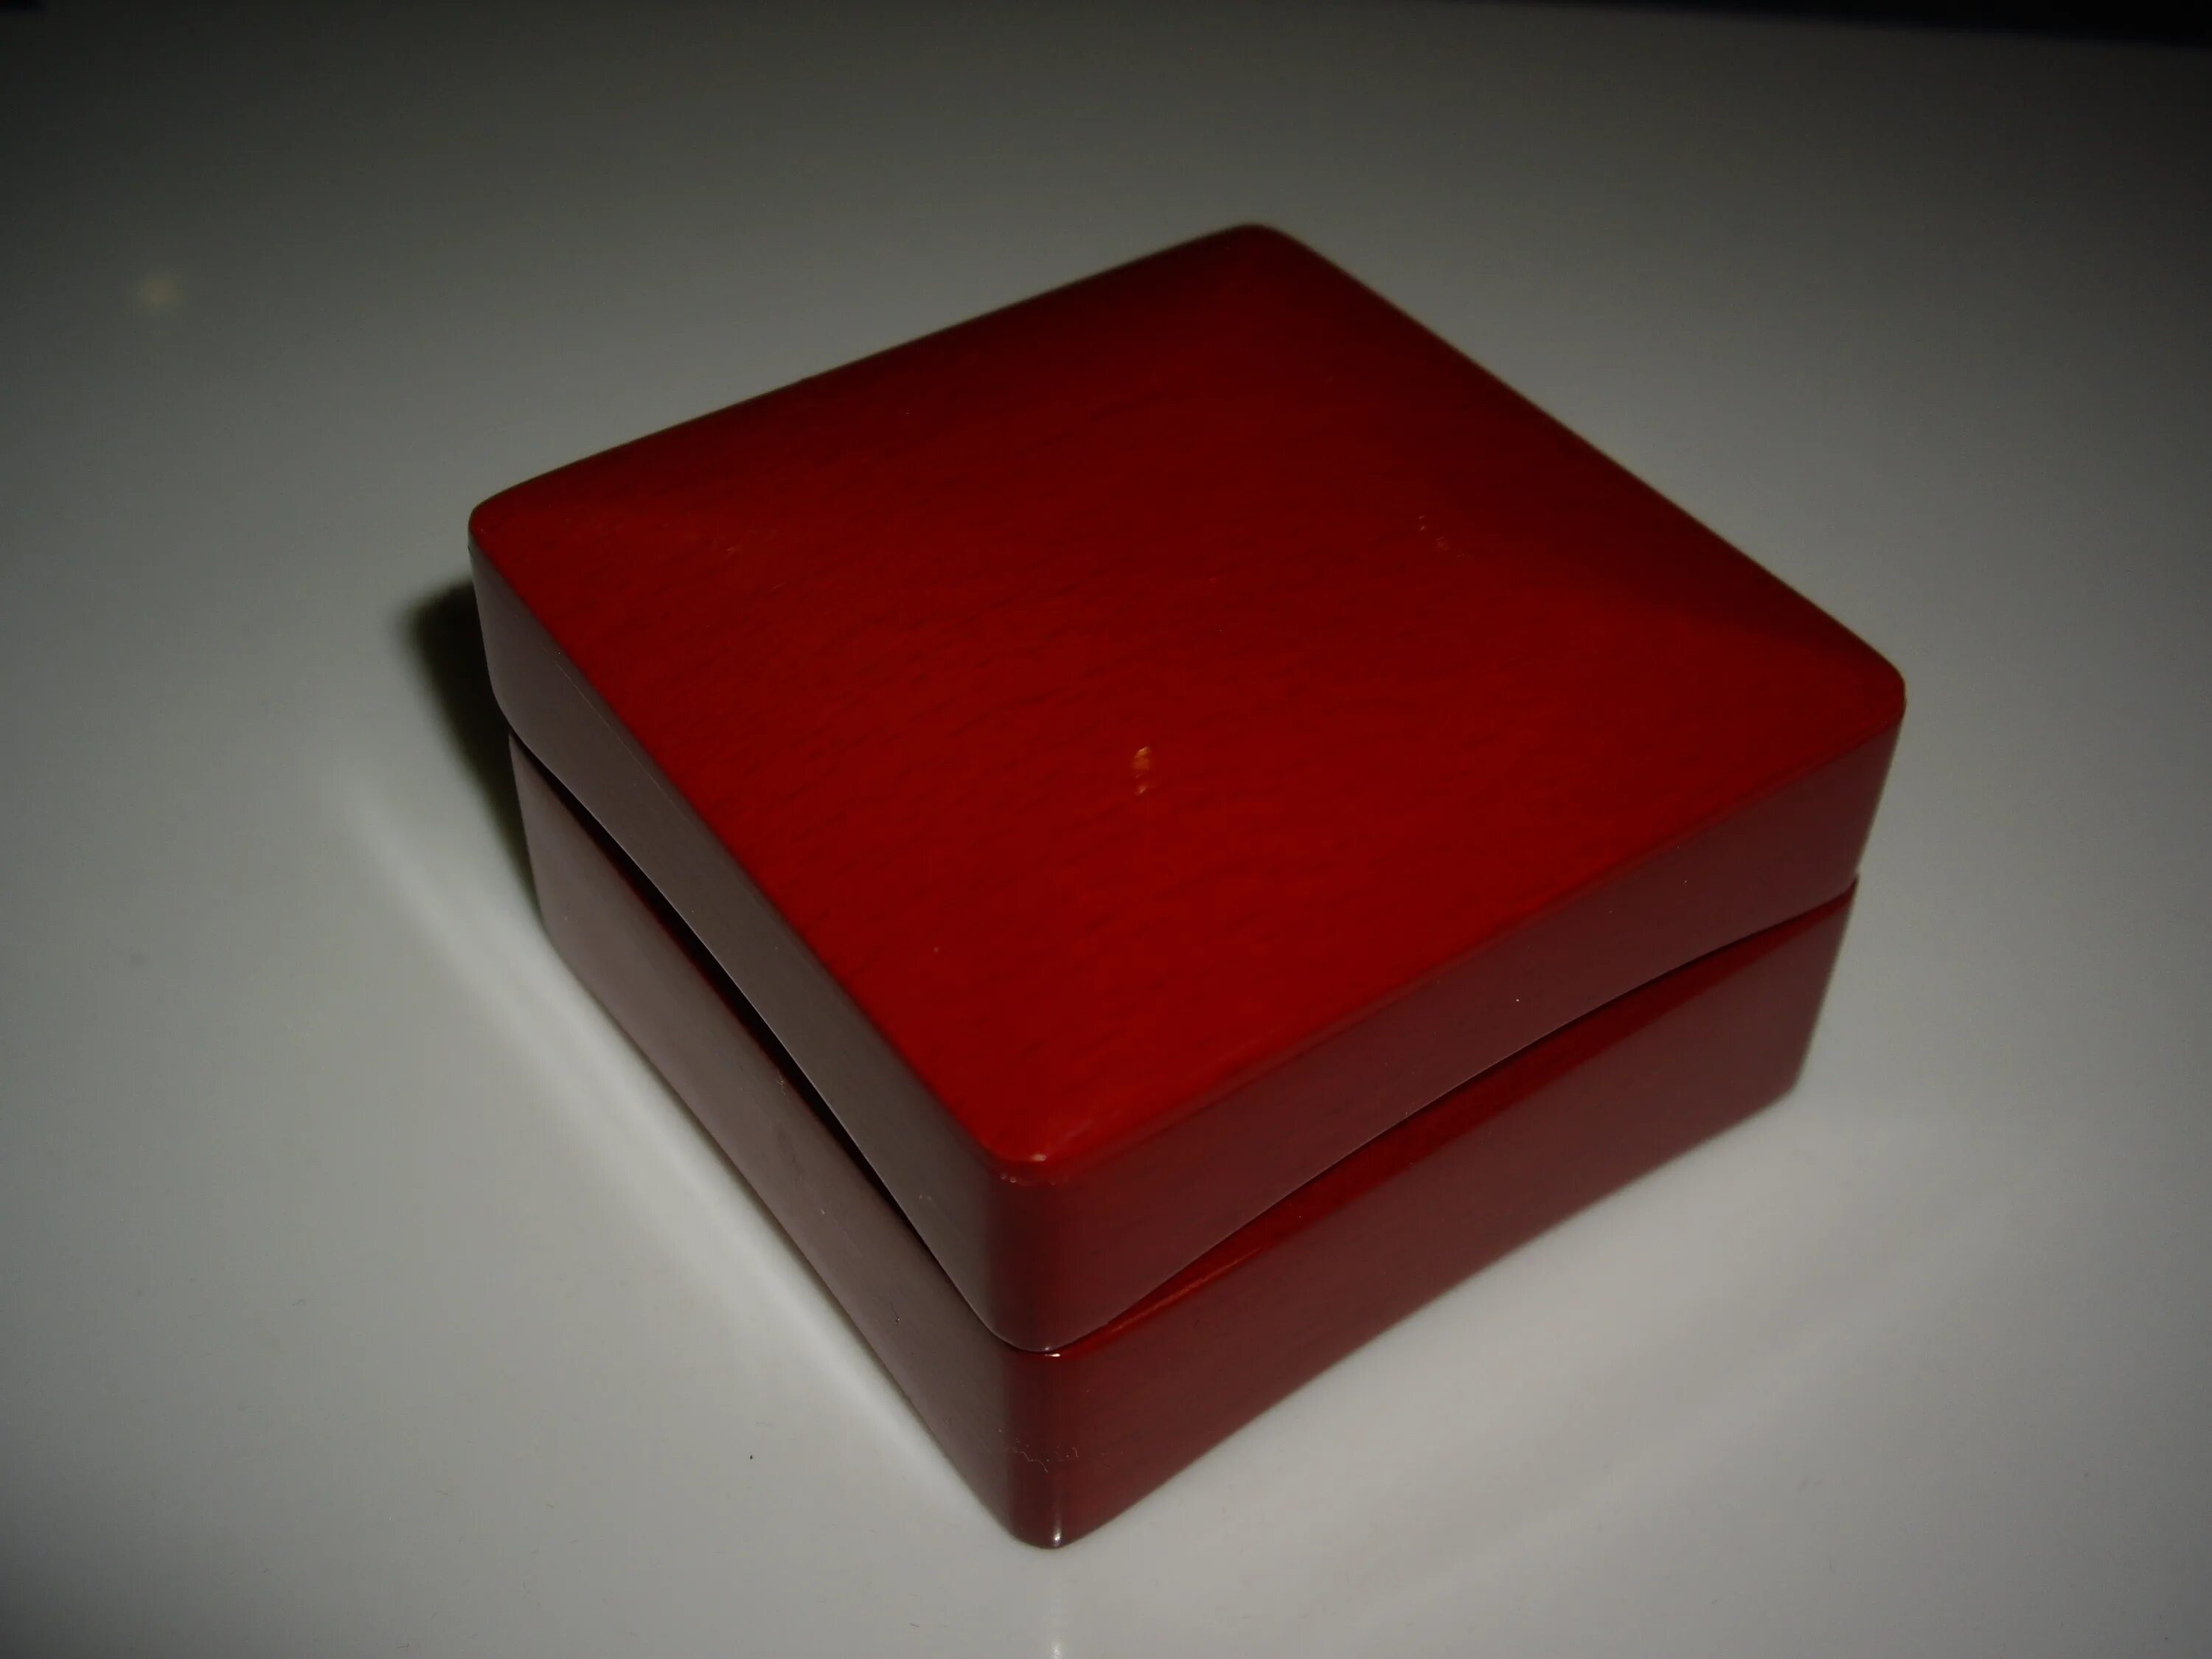 Украшения в красной коробке. Кольцо в красной коробочке. Коробочка красная под кольцо. Красная коробка для кольца. Красные коробки.